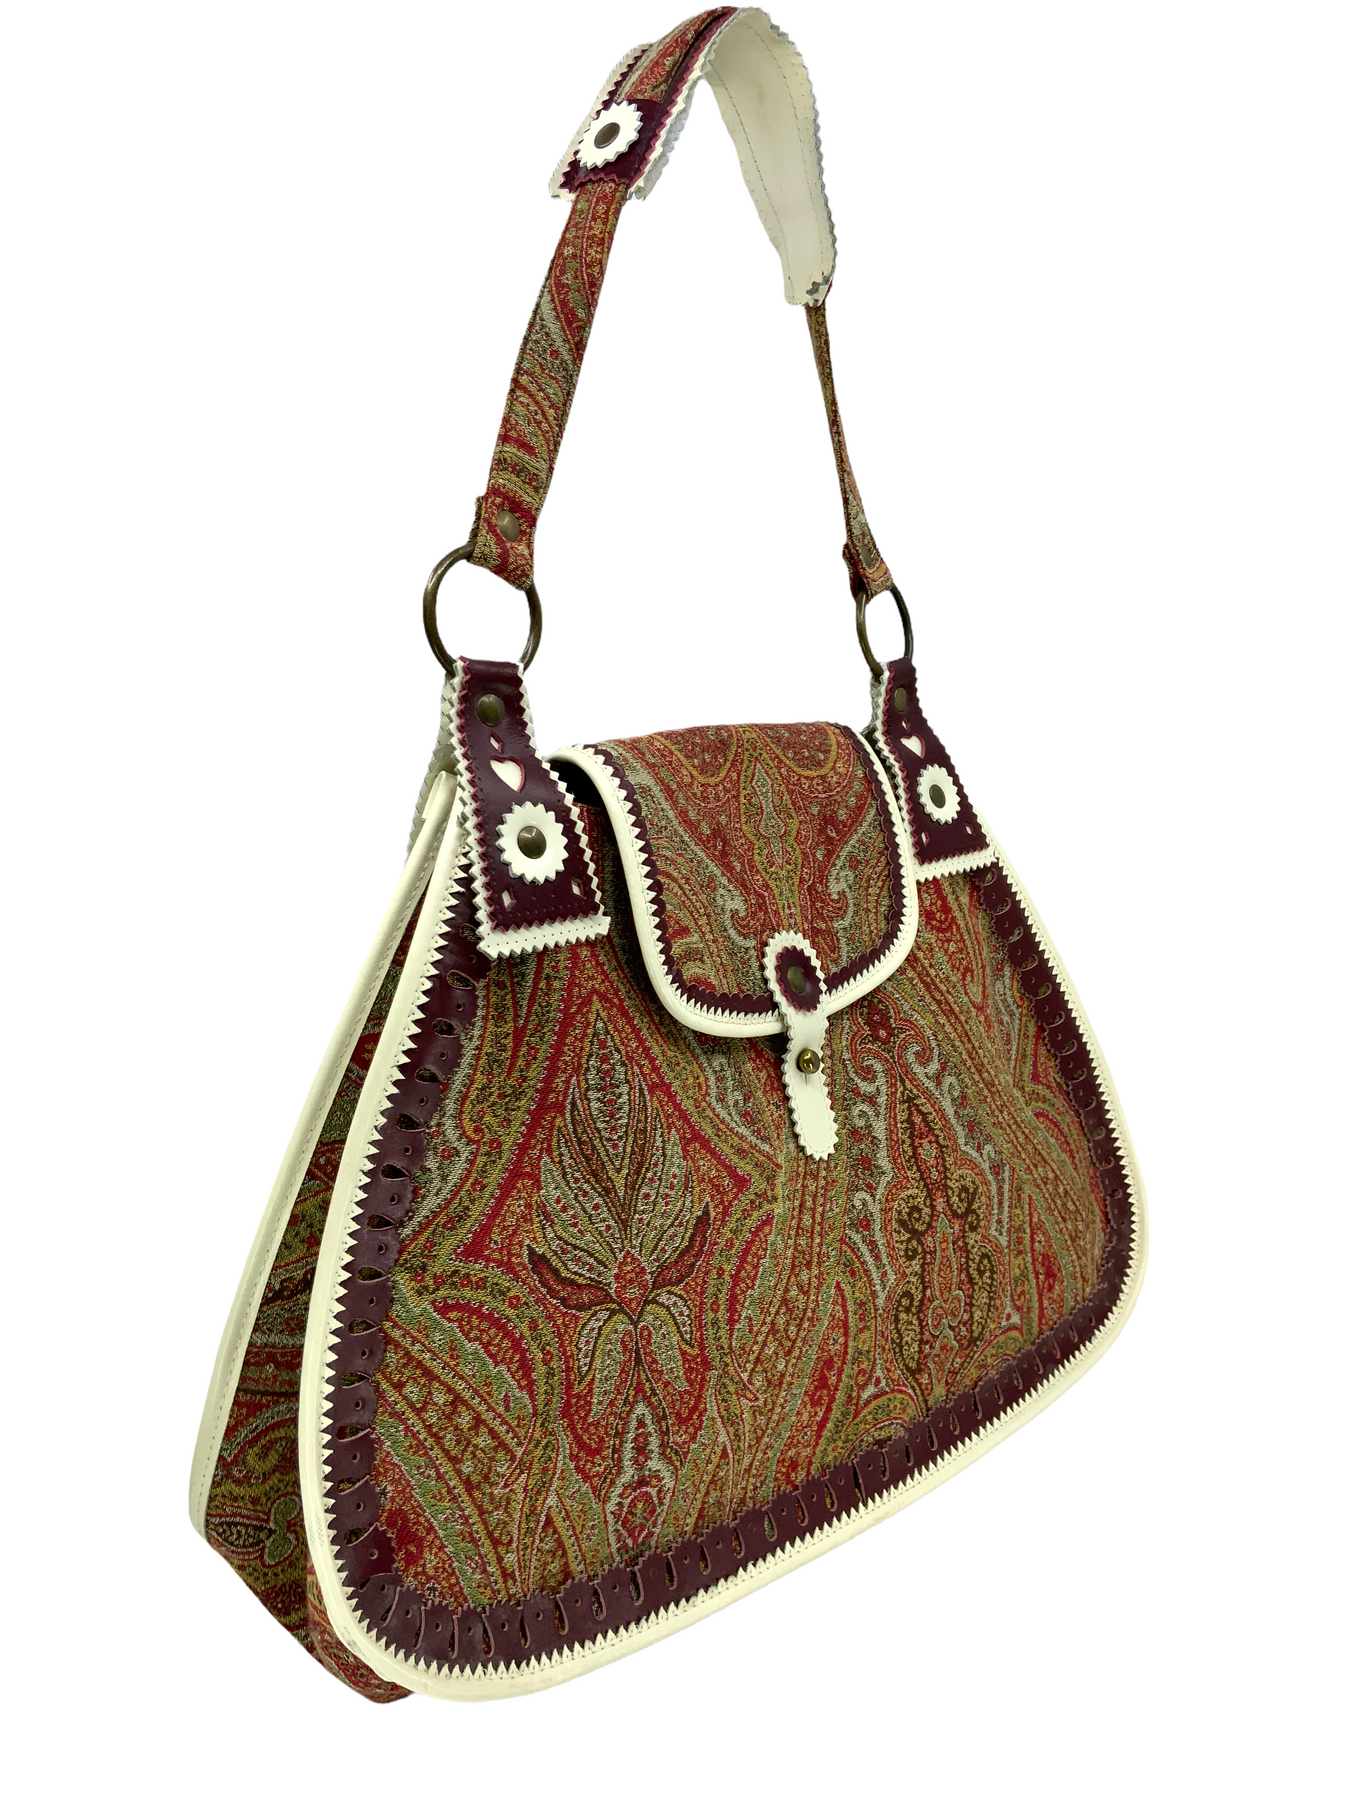 Etro Women's Fabric Handbag